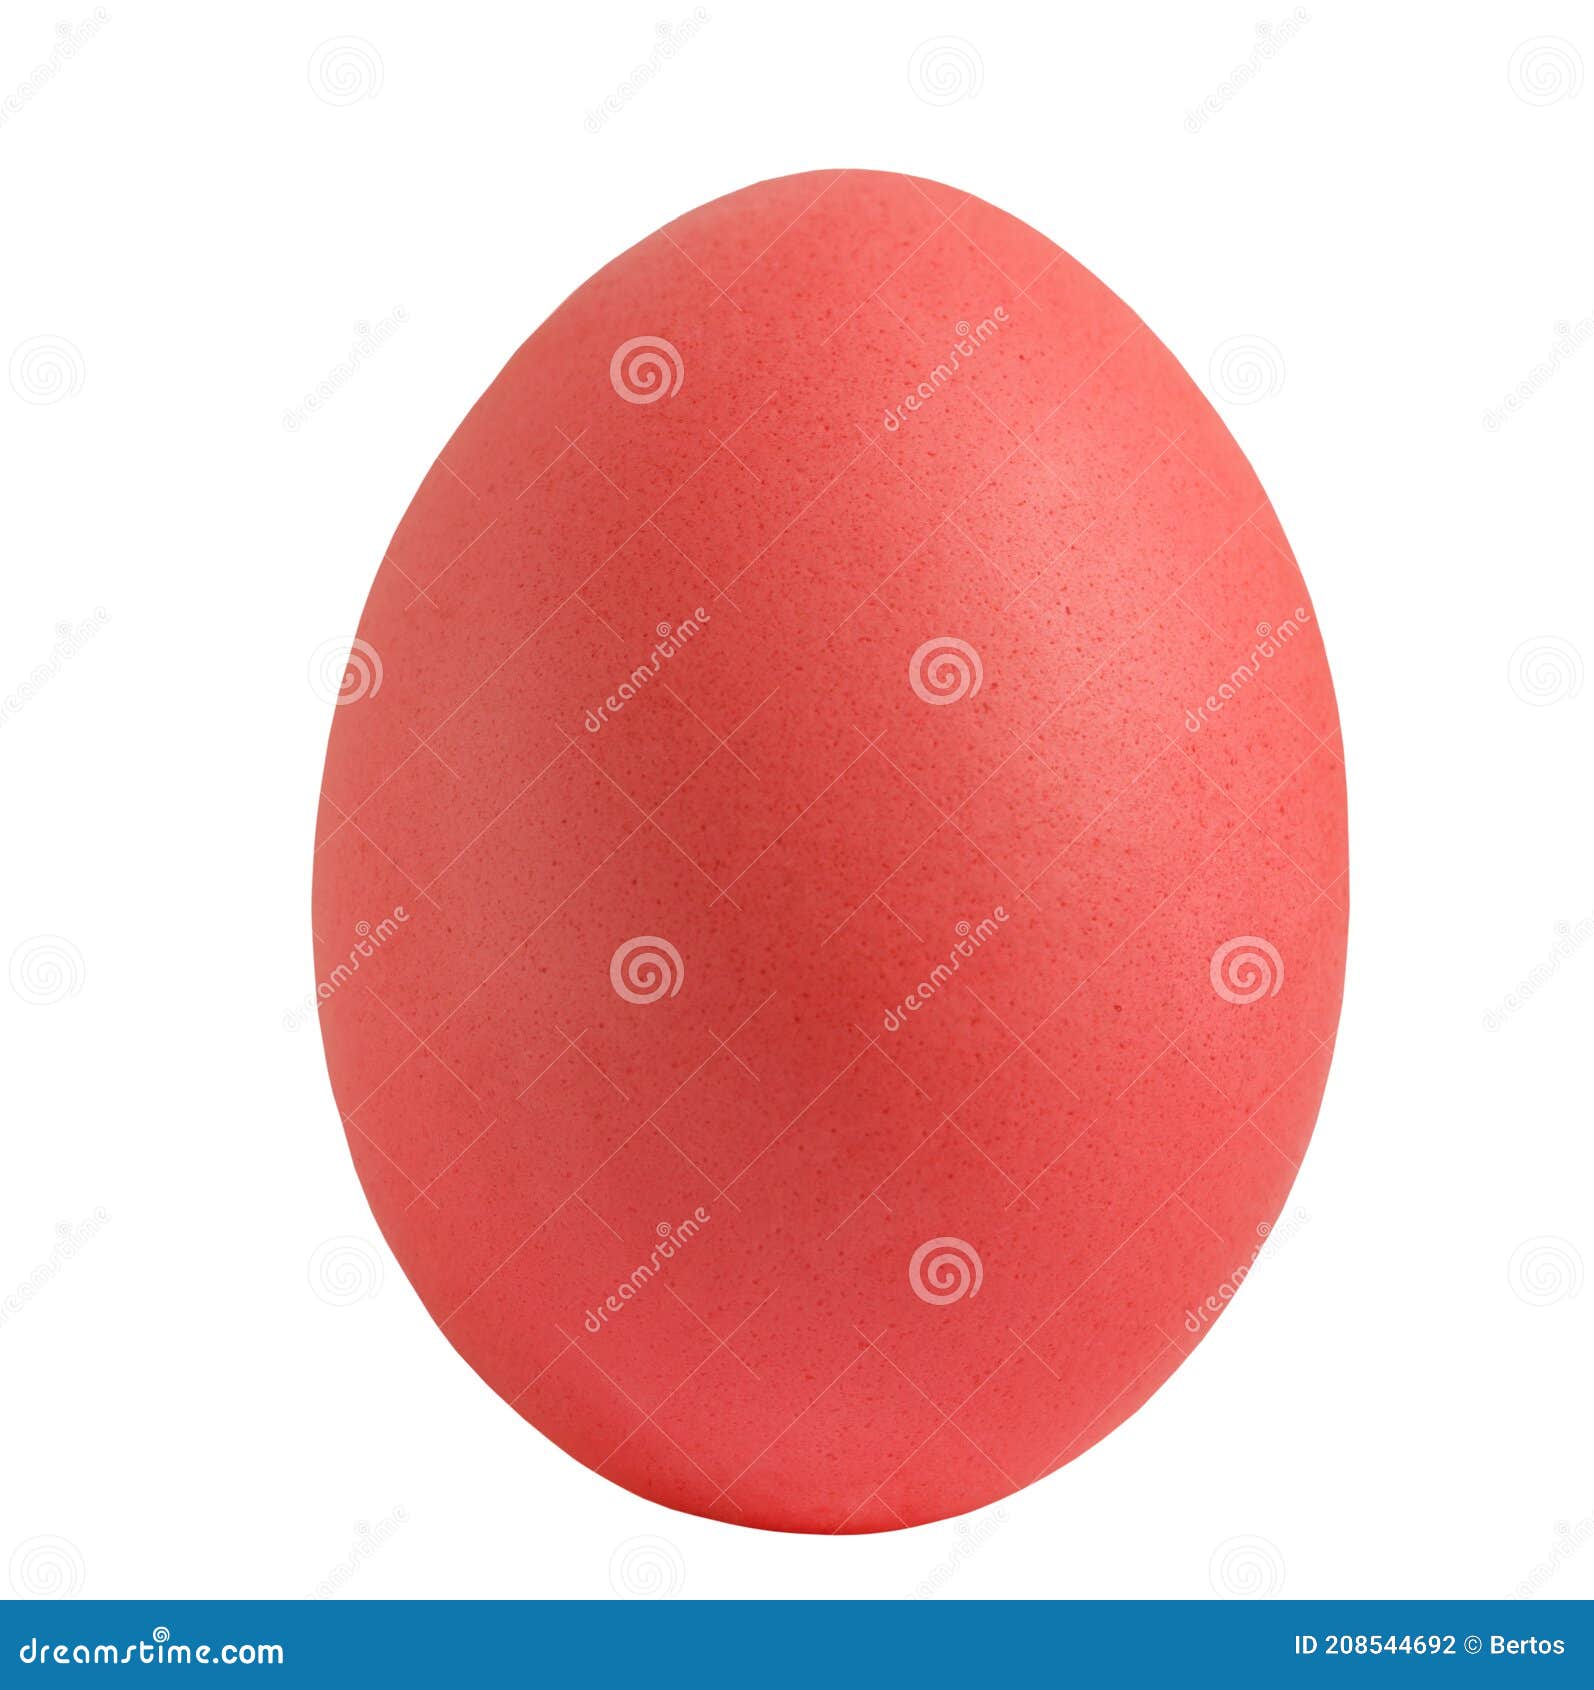 red egg isolared on white bakground